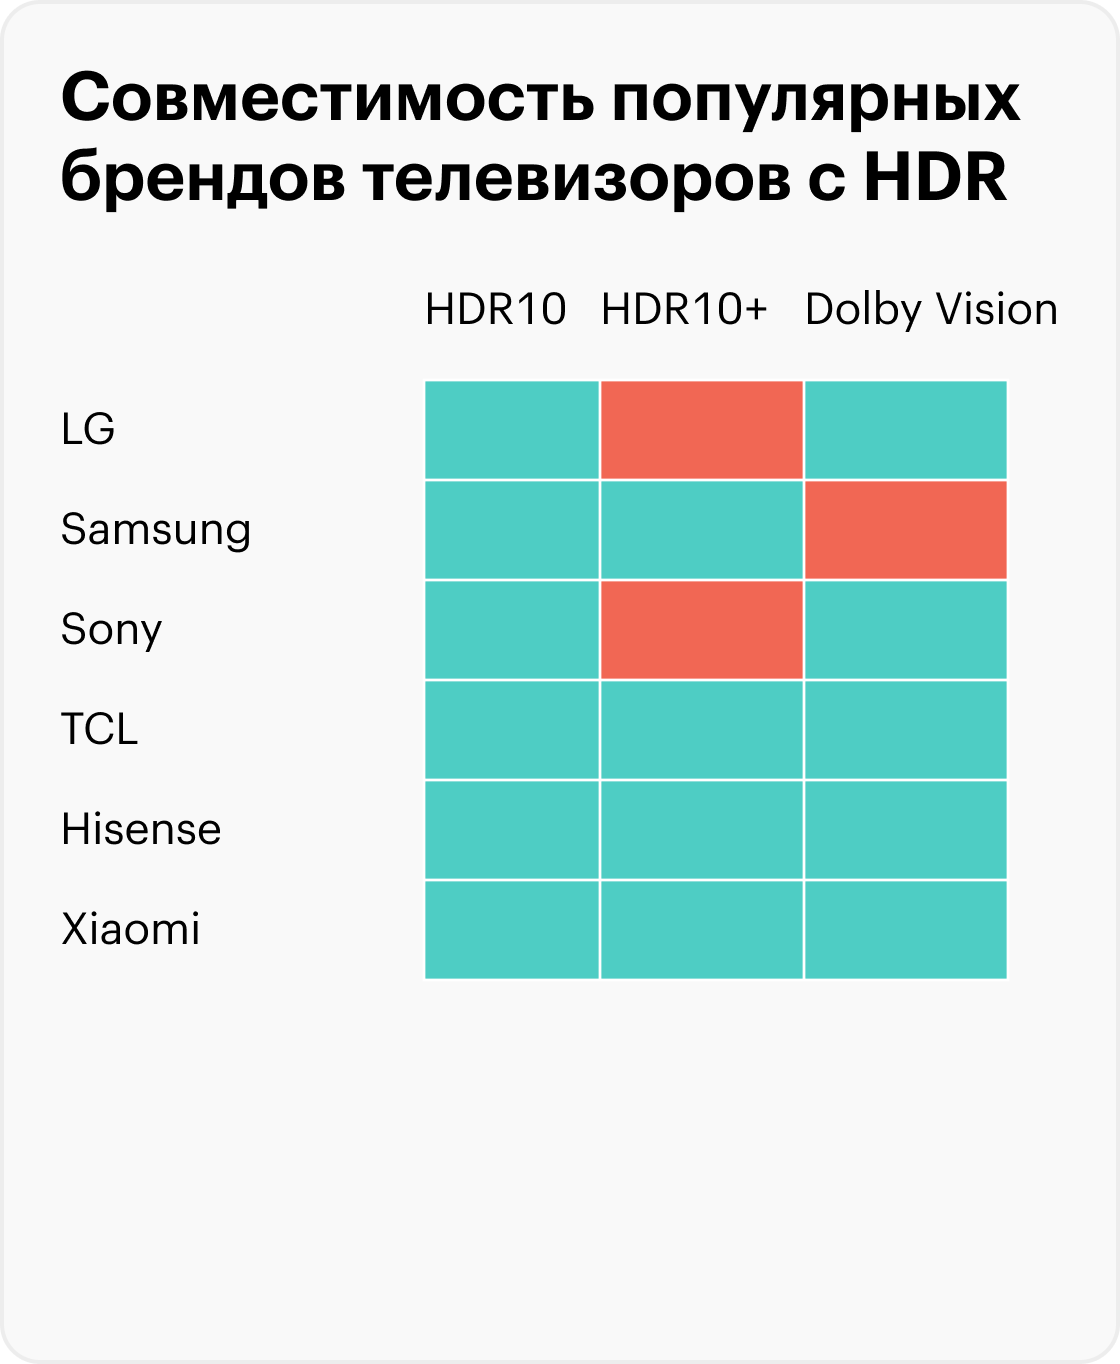 Стандарты HDR10+ и Dolby Vision поддерживаются не всеми моделями в линейке, даже если в таблице помечен зеленым